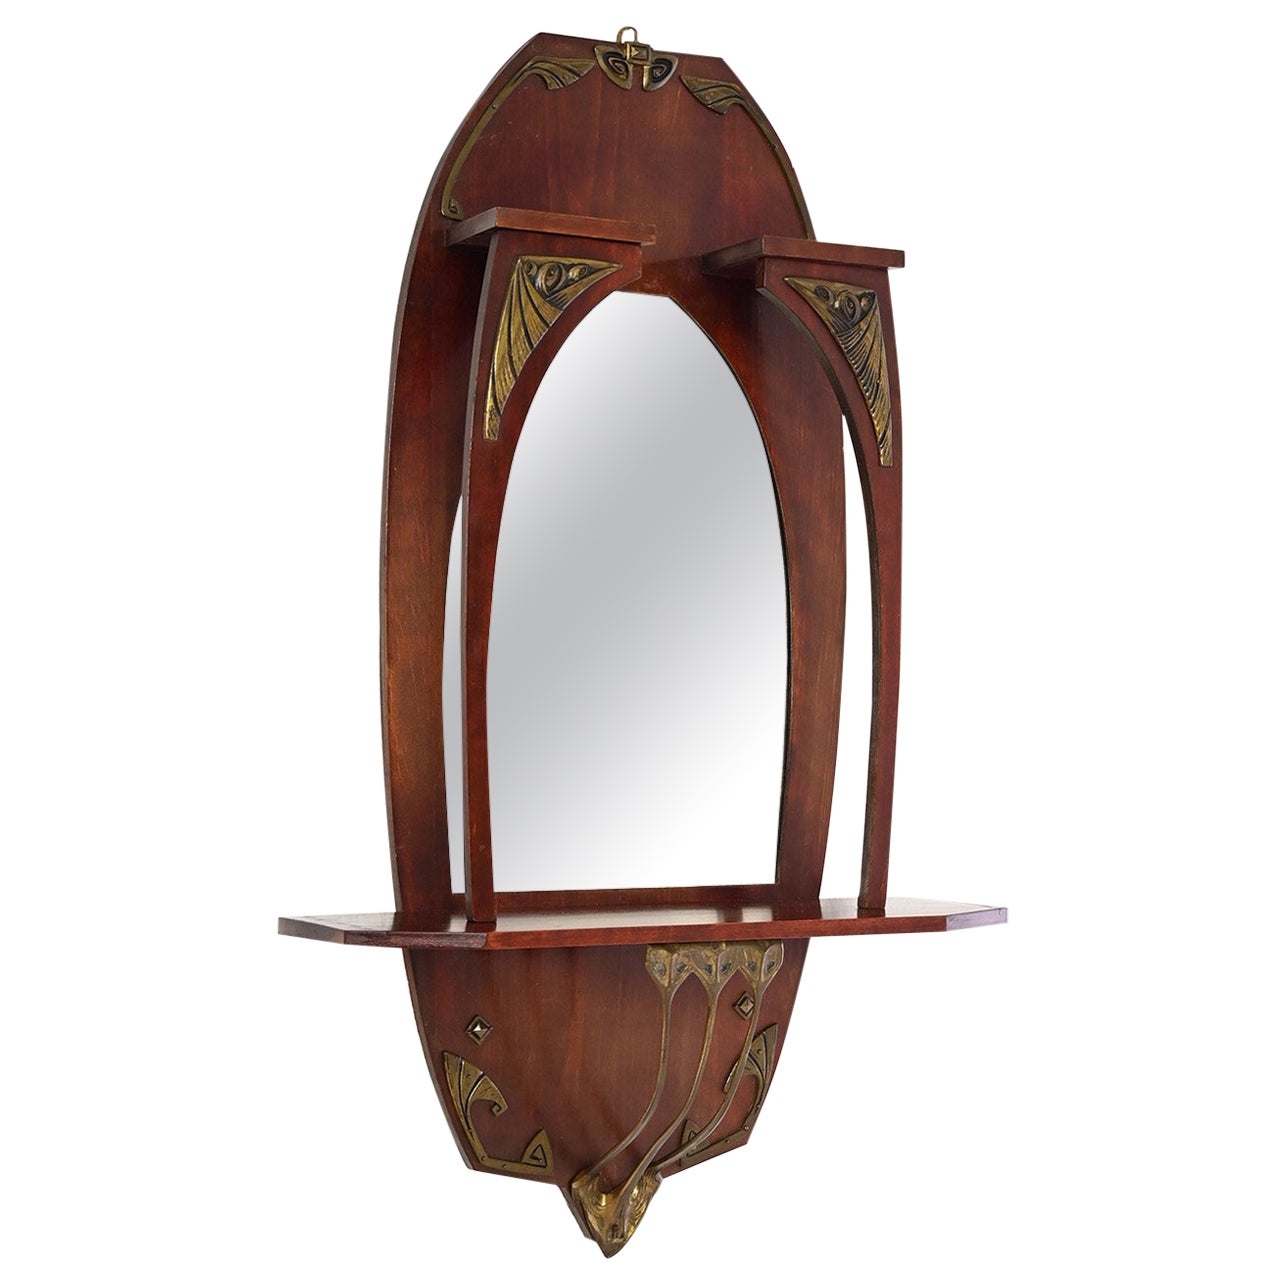 1930s art nouveau mirror